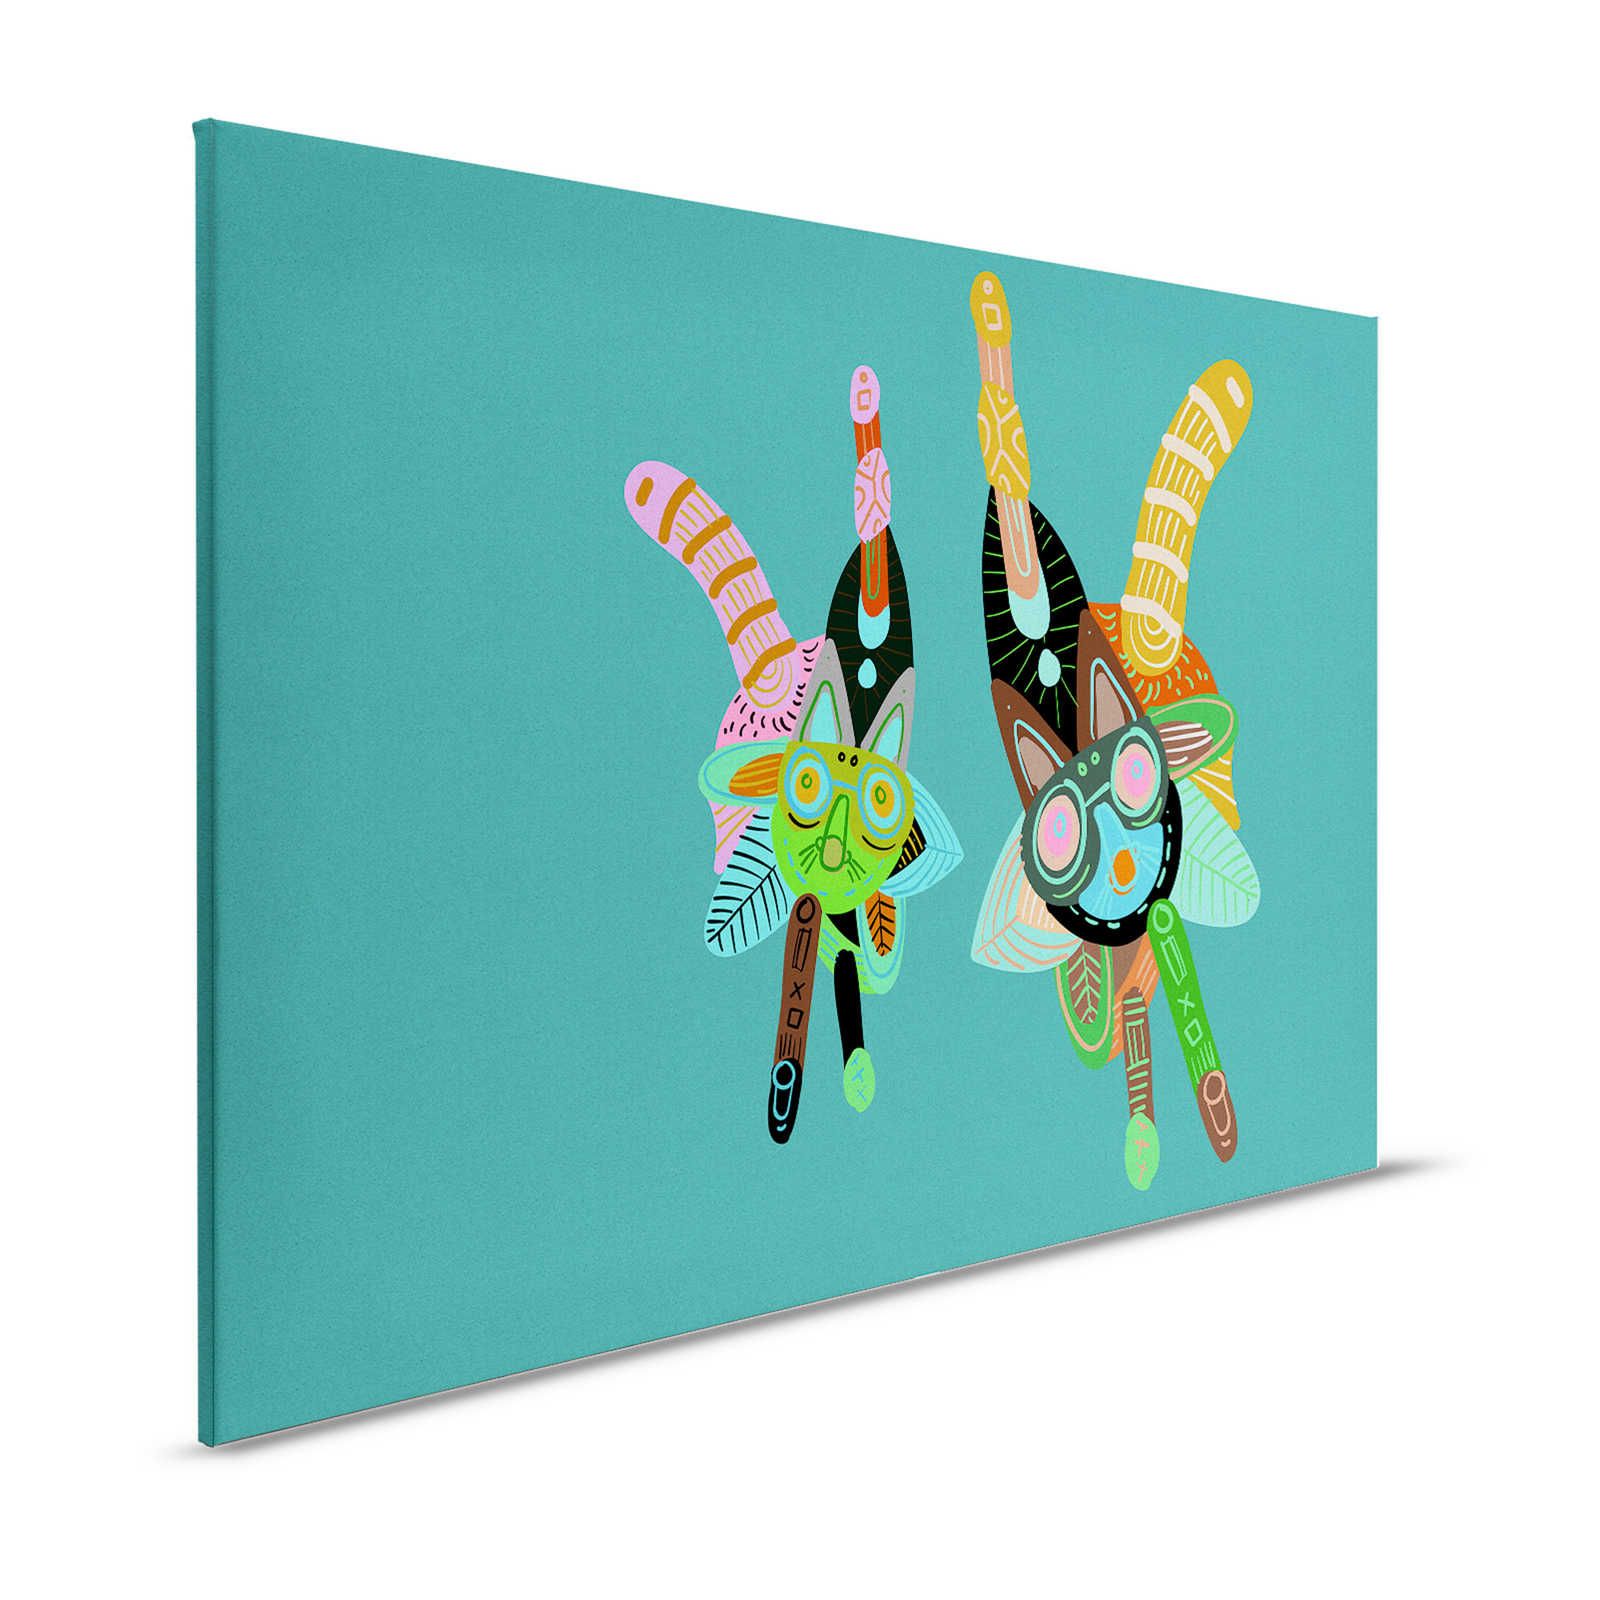 Looney Land 3 - Canvas schilderij kinderkamer kleurrijk komisch ontwerp - 1.20 m x 0.80 m
